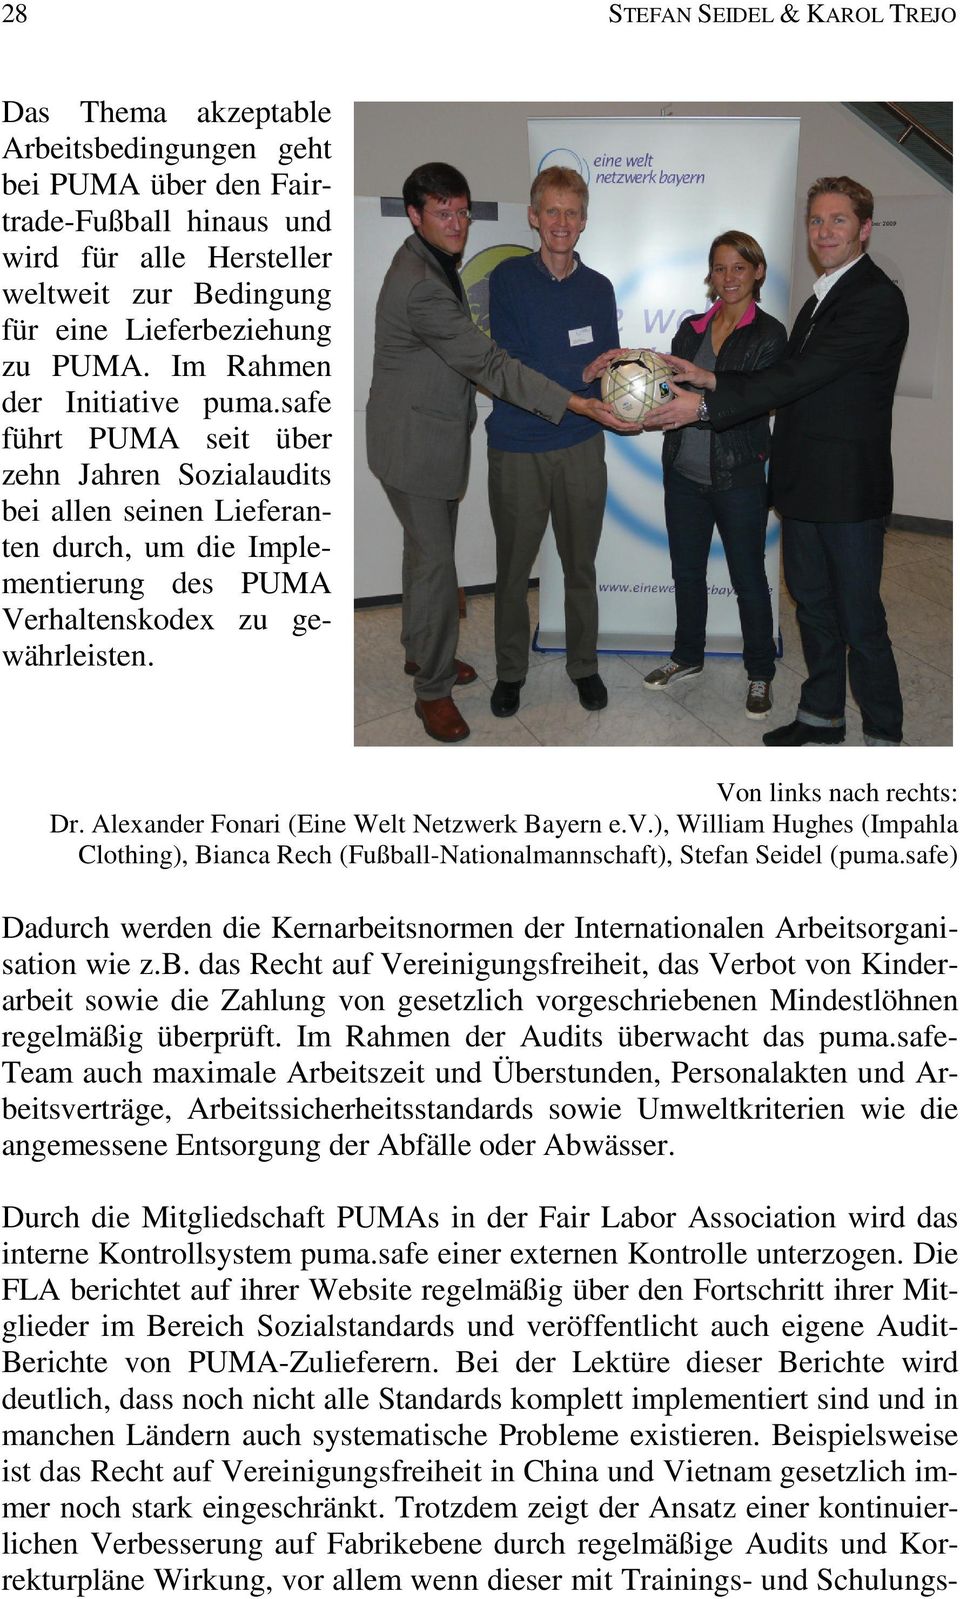 Von links nach rechts: Dr. Alexander Fonari (Eine Welt Netzwerk Bayern e.v.), William Hughes (Impahla Clothing), Bianca Rech (Fußball-Nationalmannschaft), Stefan Seidel (puma.